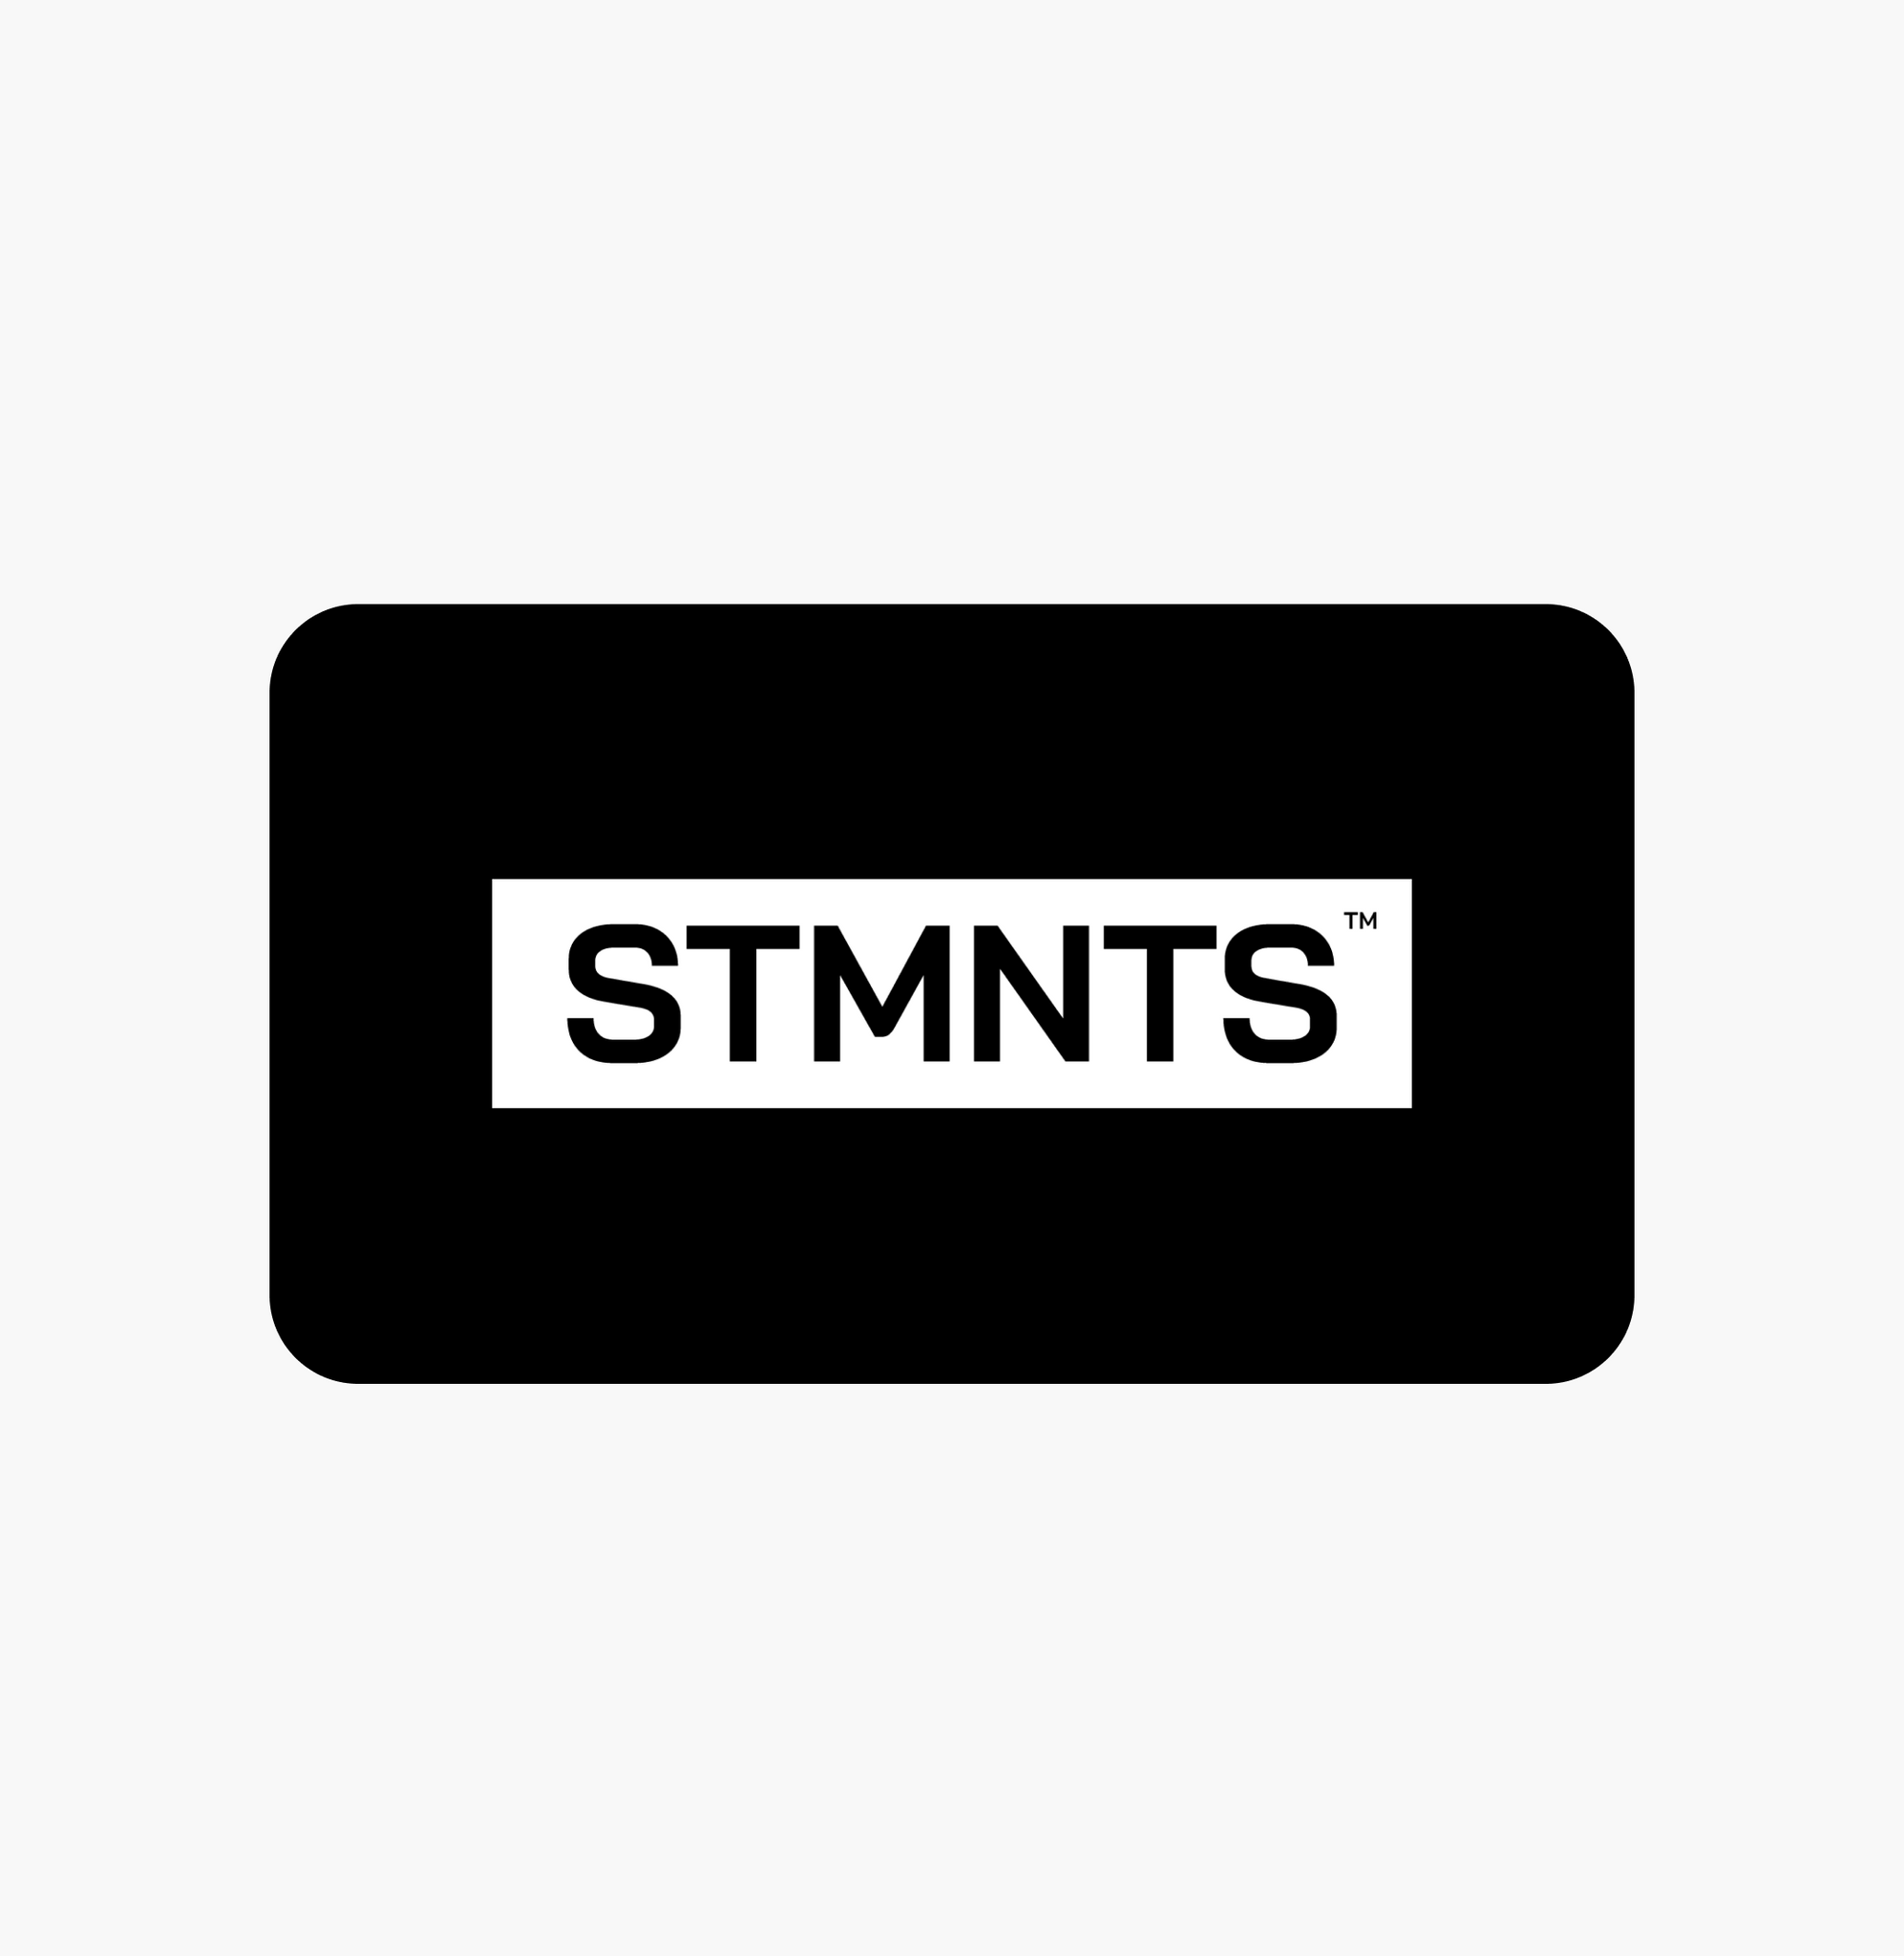 STMNTS Gift card - STMNTS